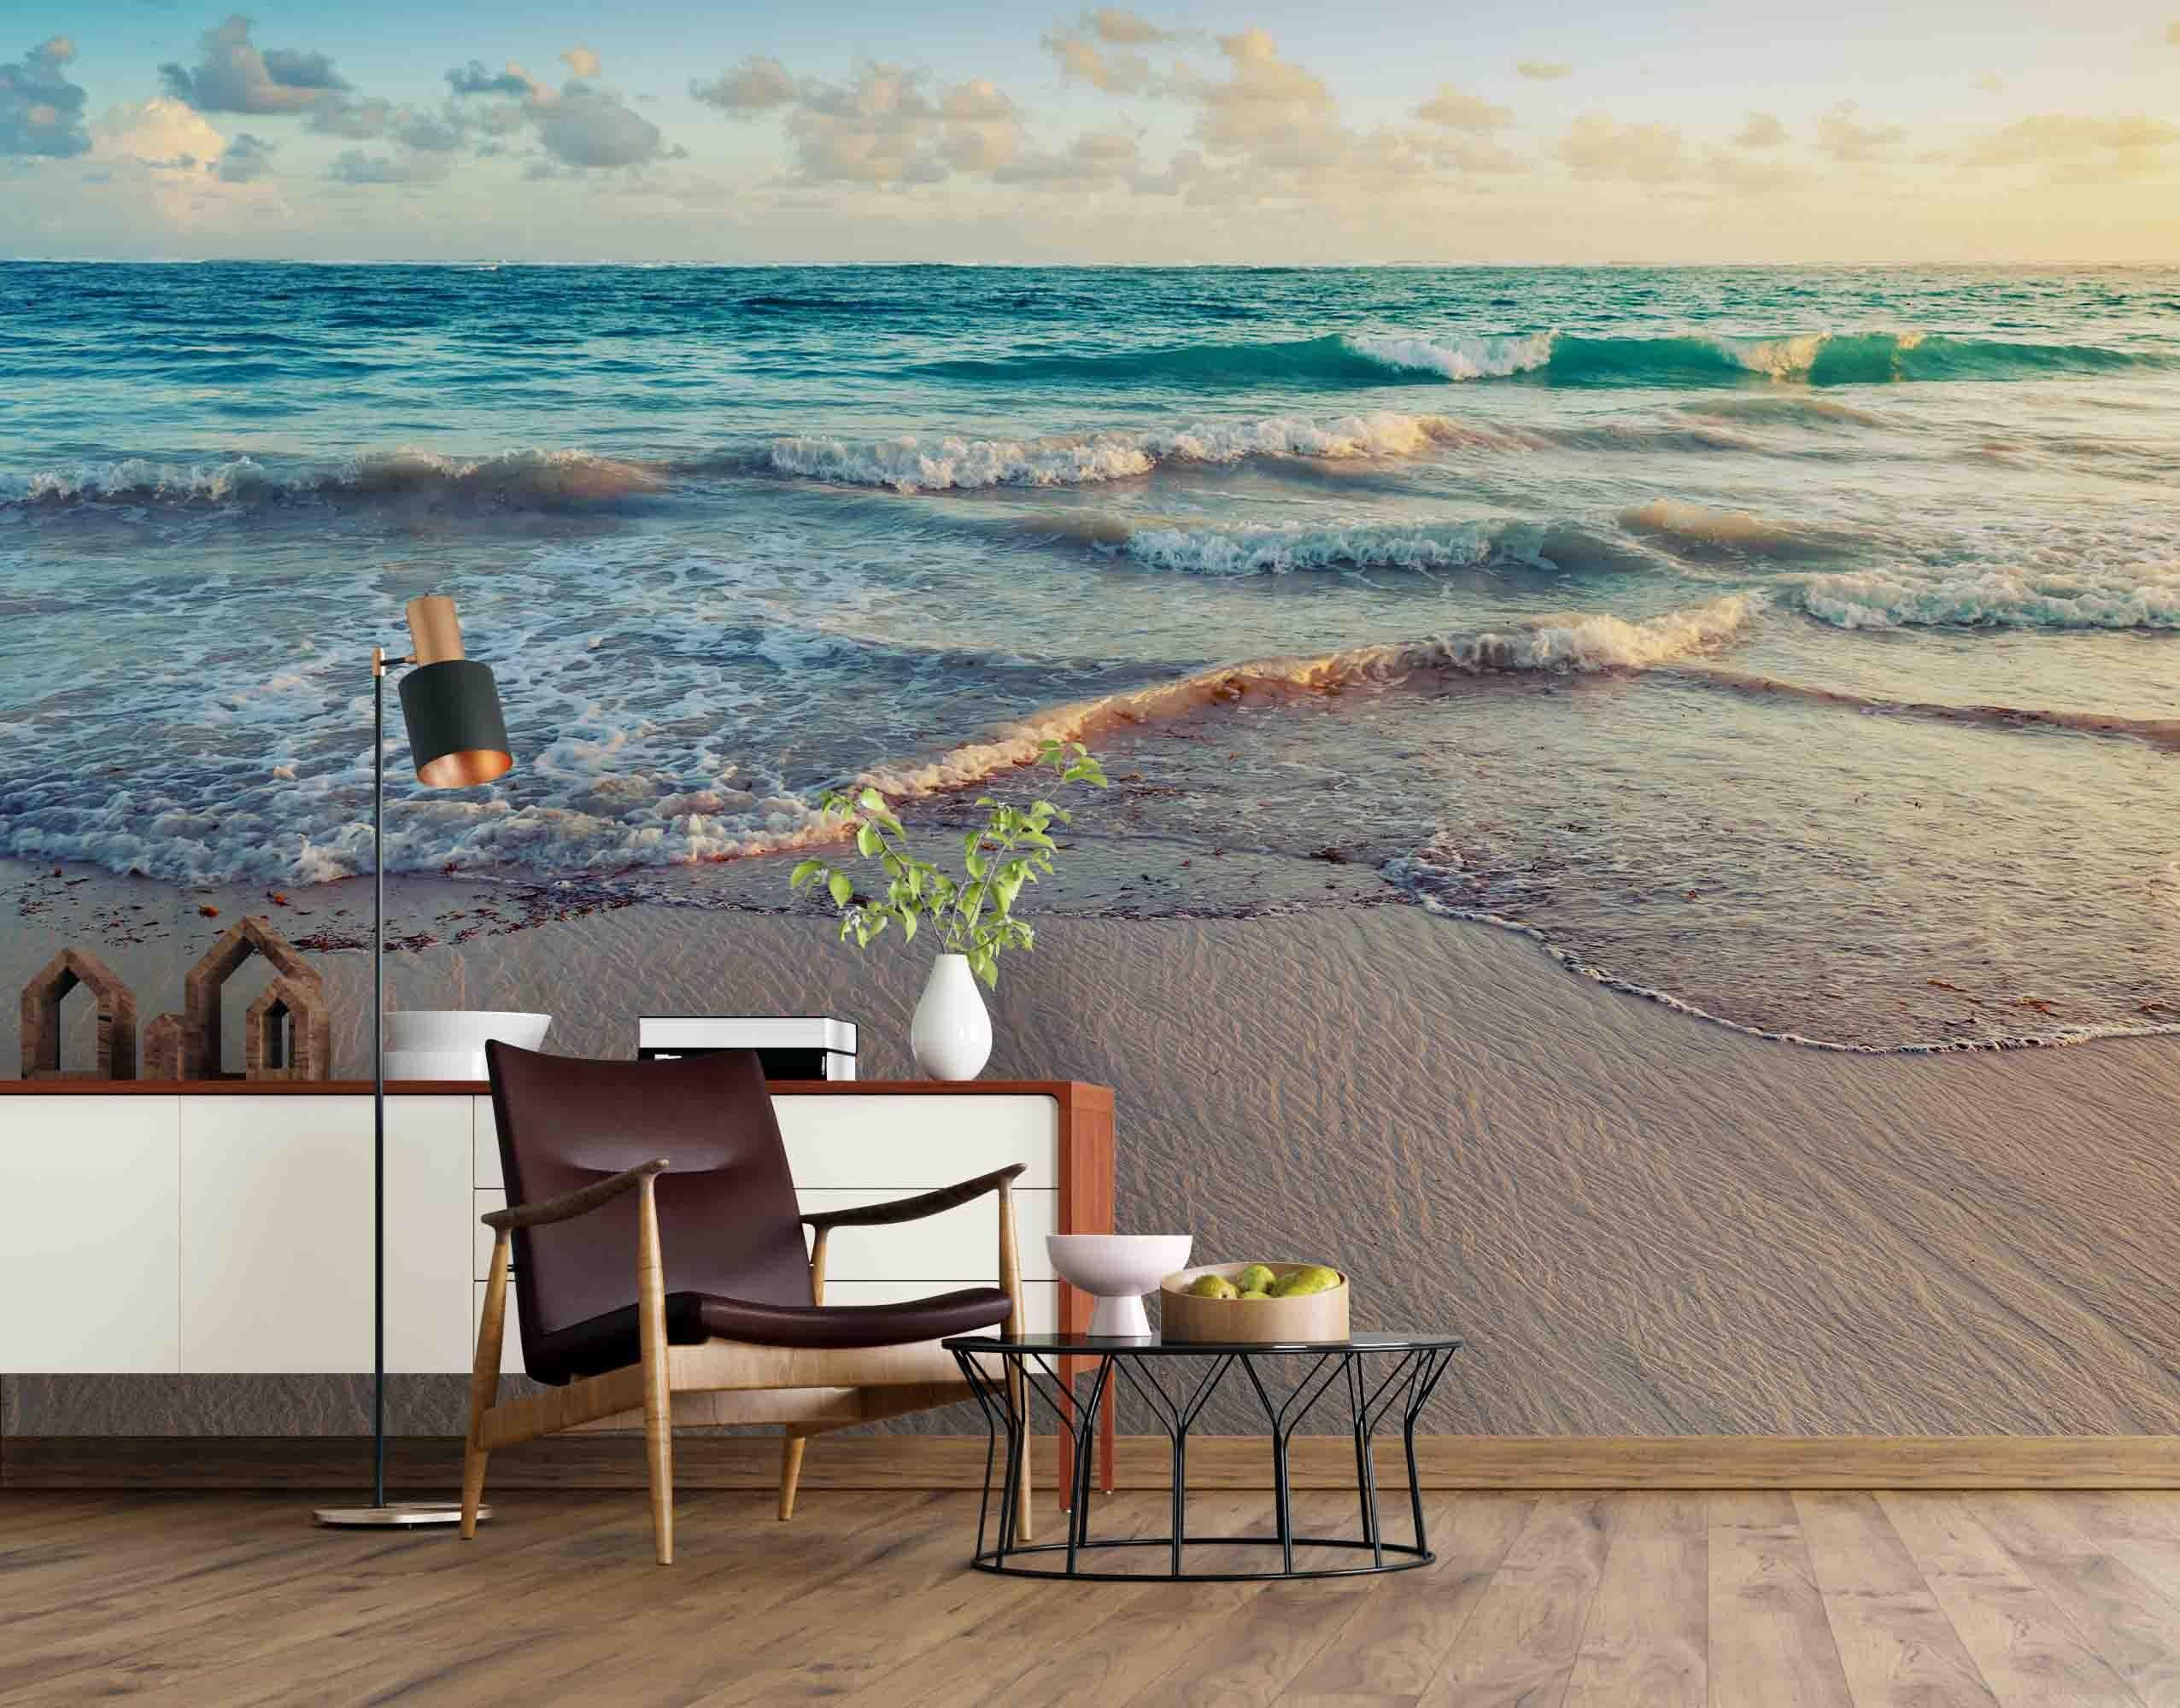 3D Blue Sea Seaside Beach Waves Wall Mural Wallpaper ZY D9- Jess Art Decoration